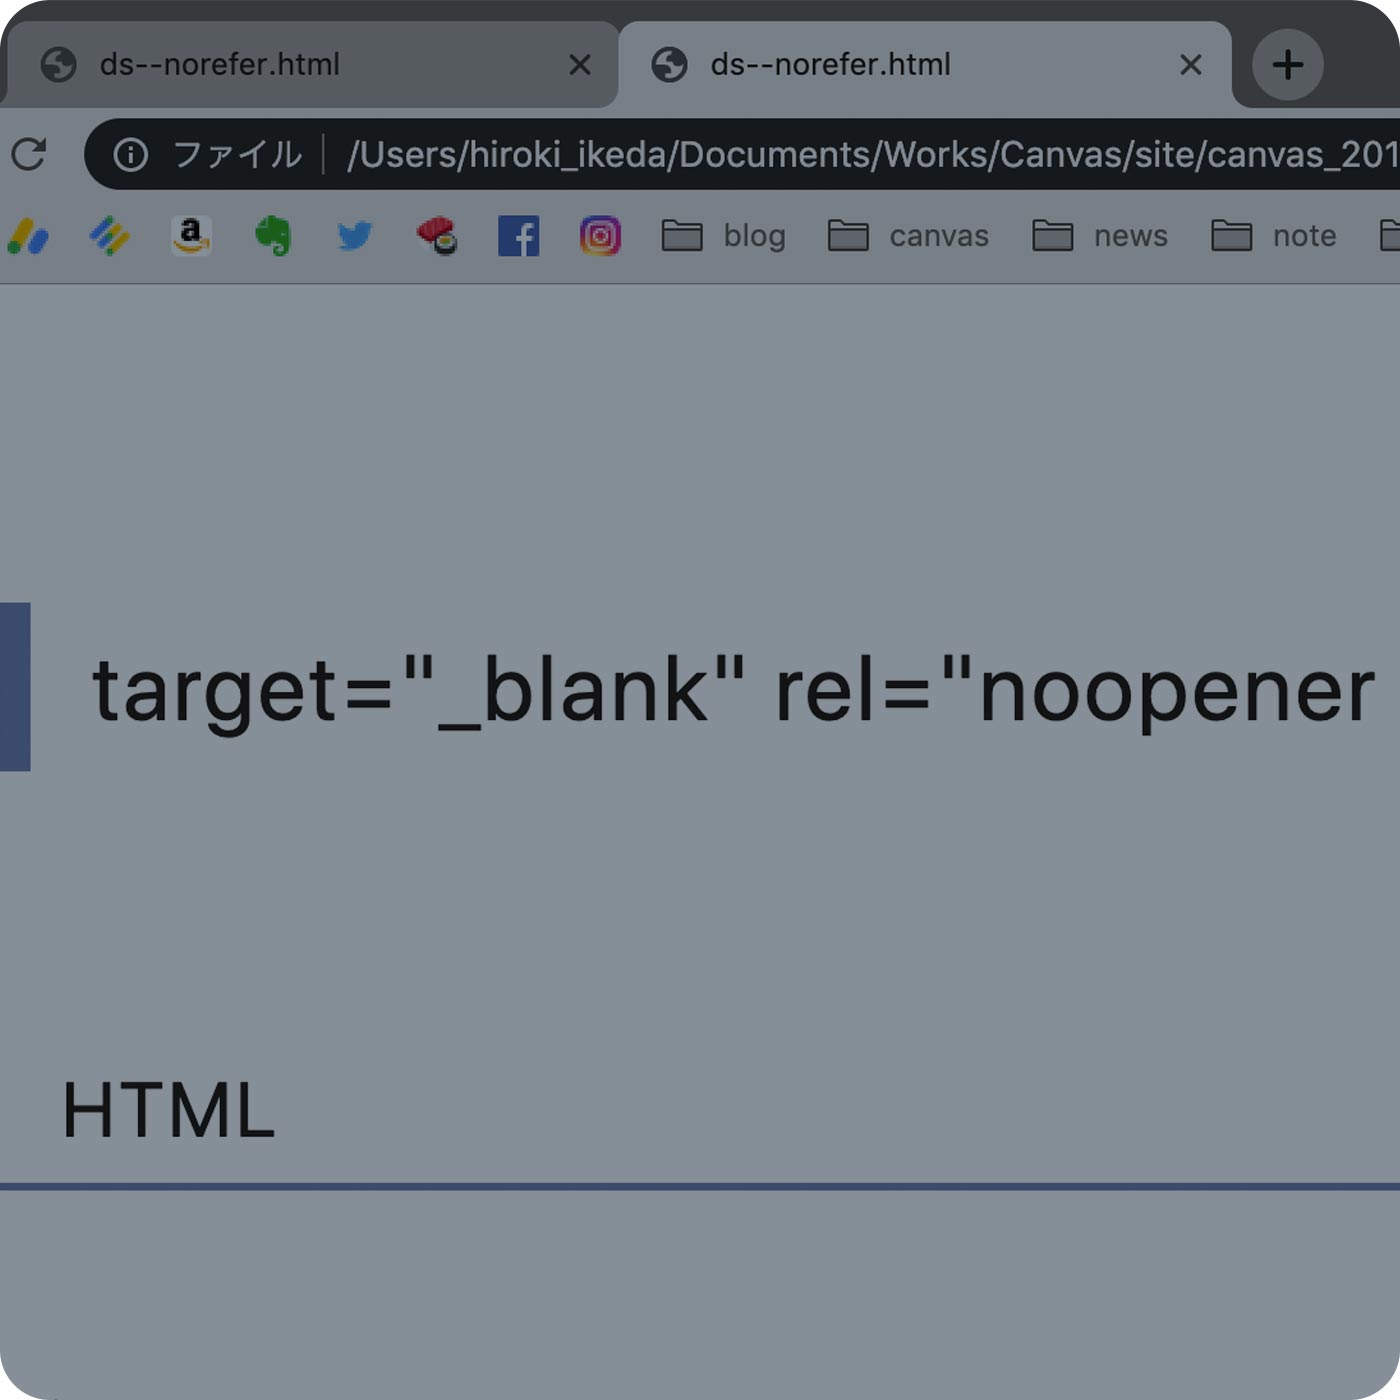 知らなかった aタグに target=”_blank” の脆弱性。使う時は rel=”noopener” をつけとこう。